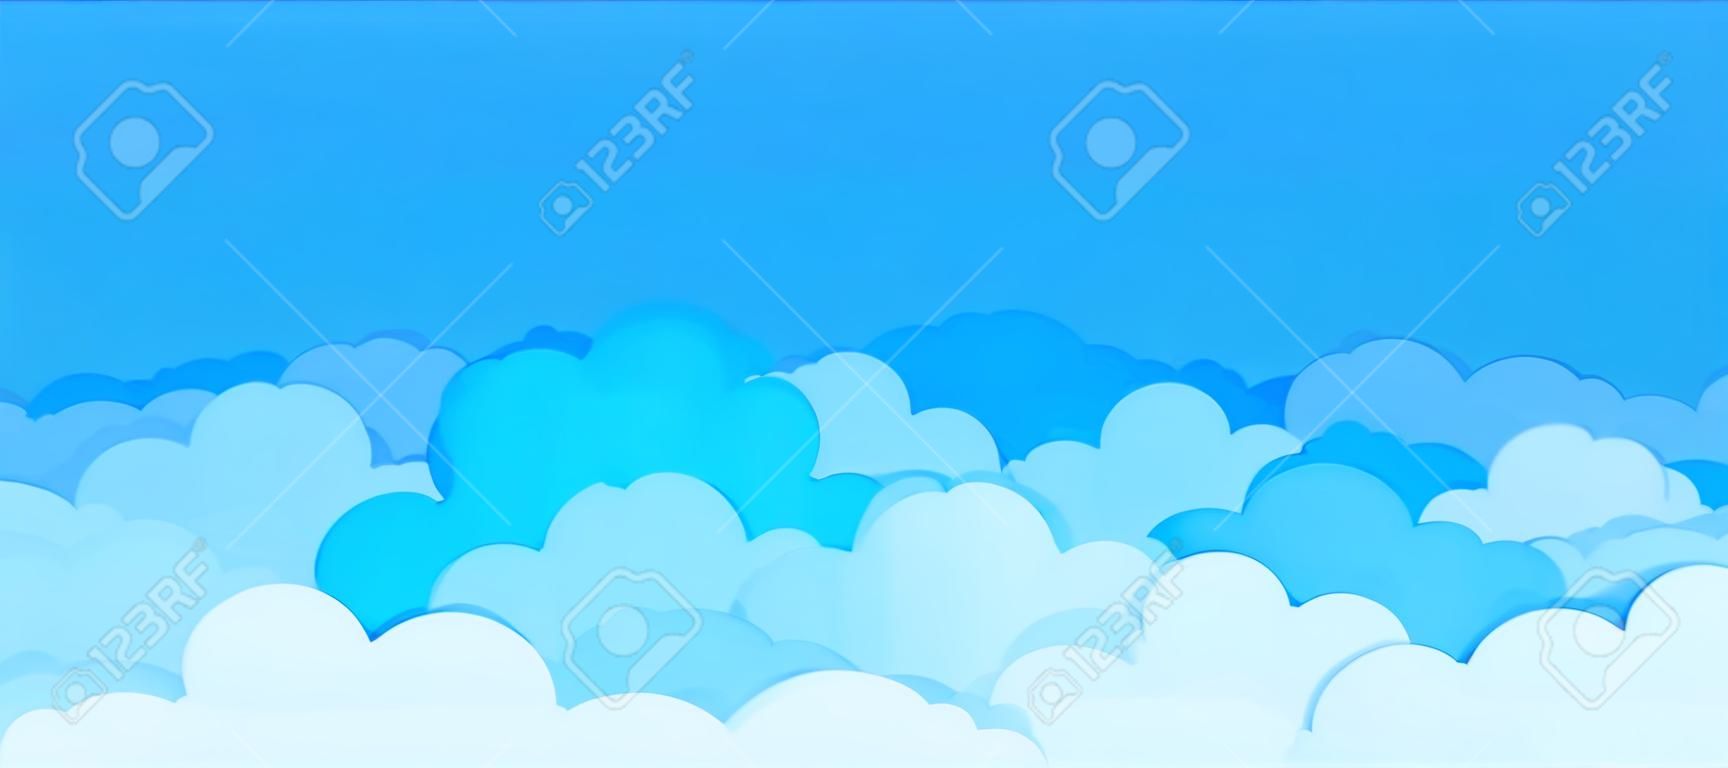 Fondo plano de la nube. Dibujos animados de cielo azul patrón abstracto marco nublado escena de cartel de verano nublado. Papel tapiz gráfico de nubes vectoriales